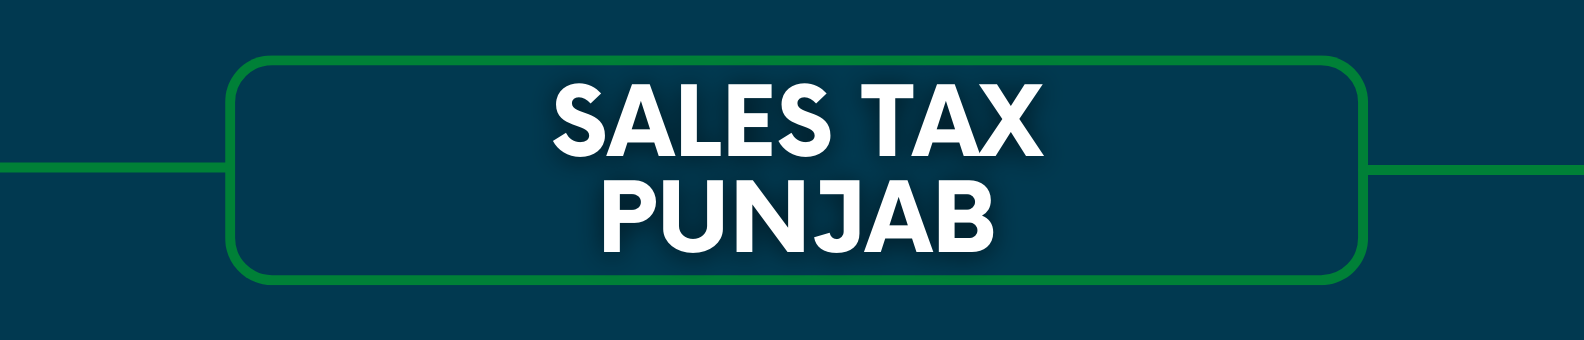 Sales Tax Punjab